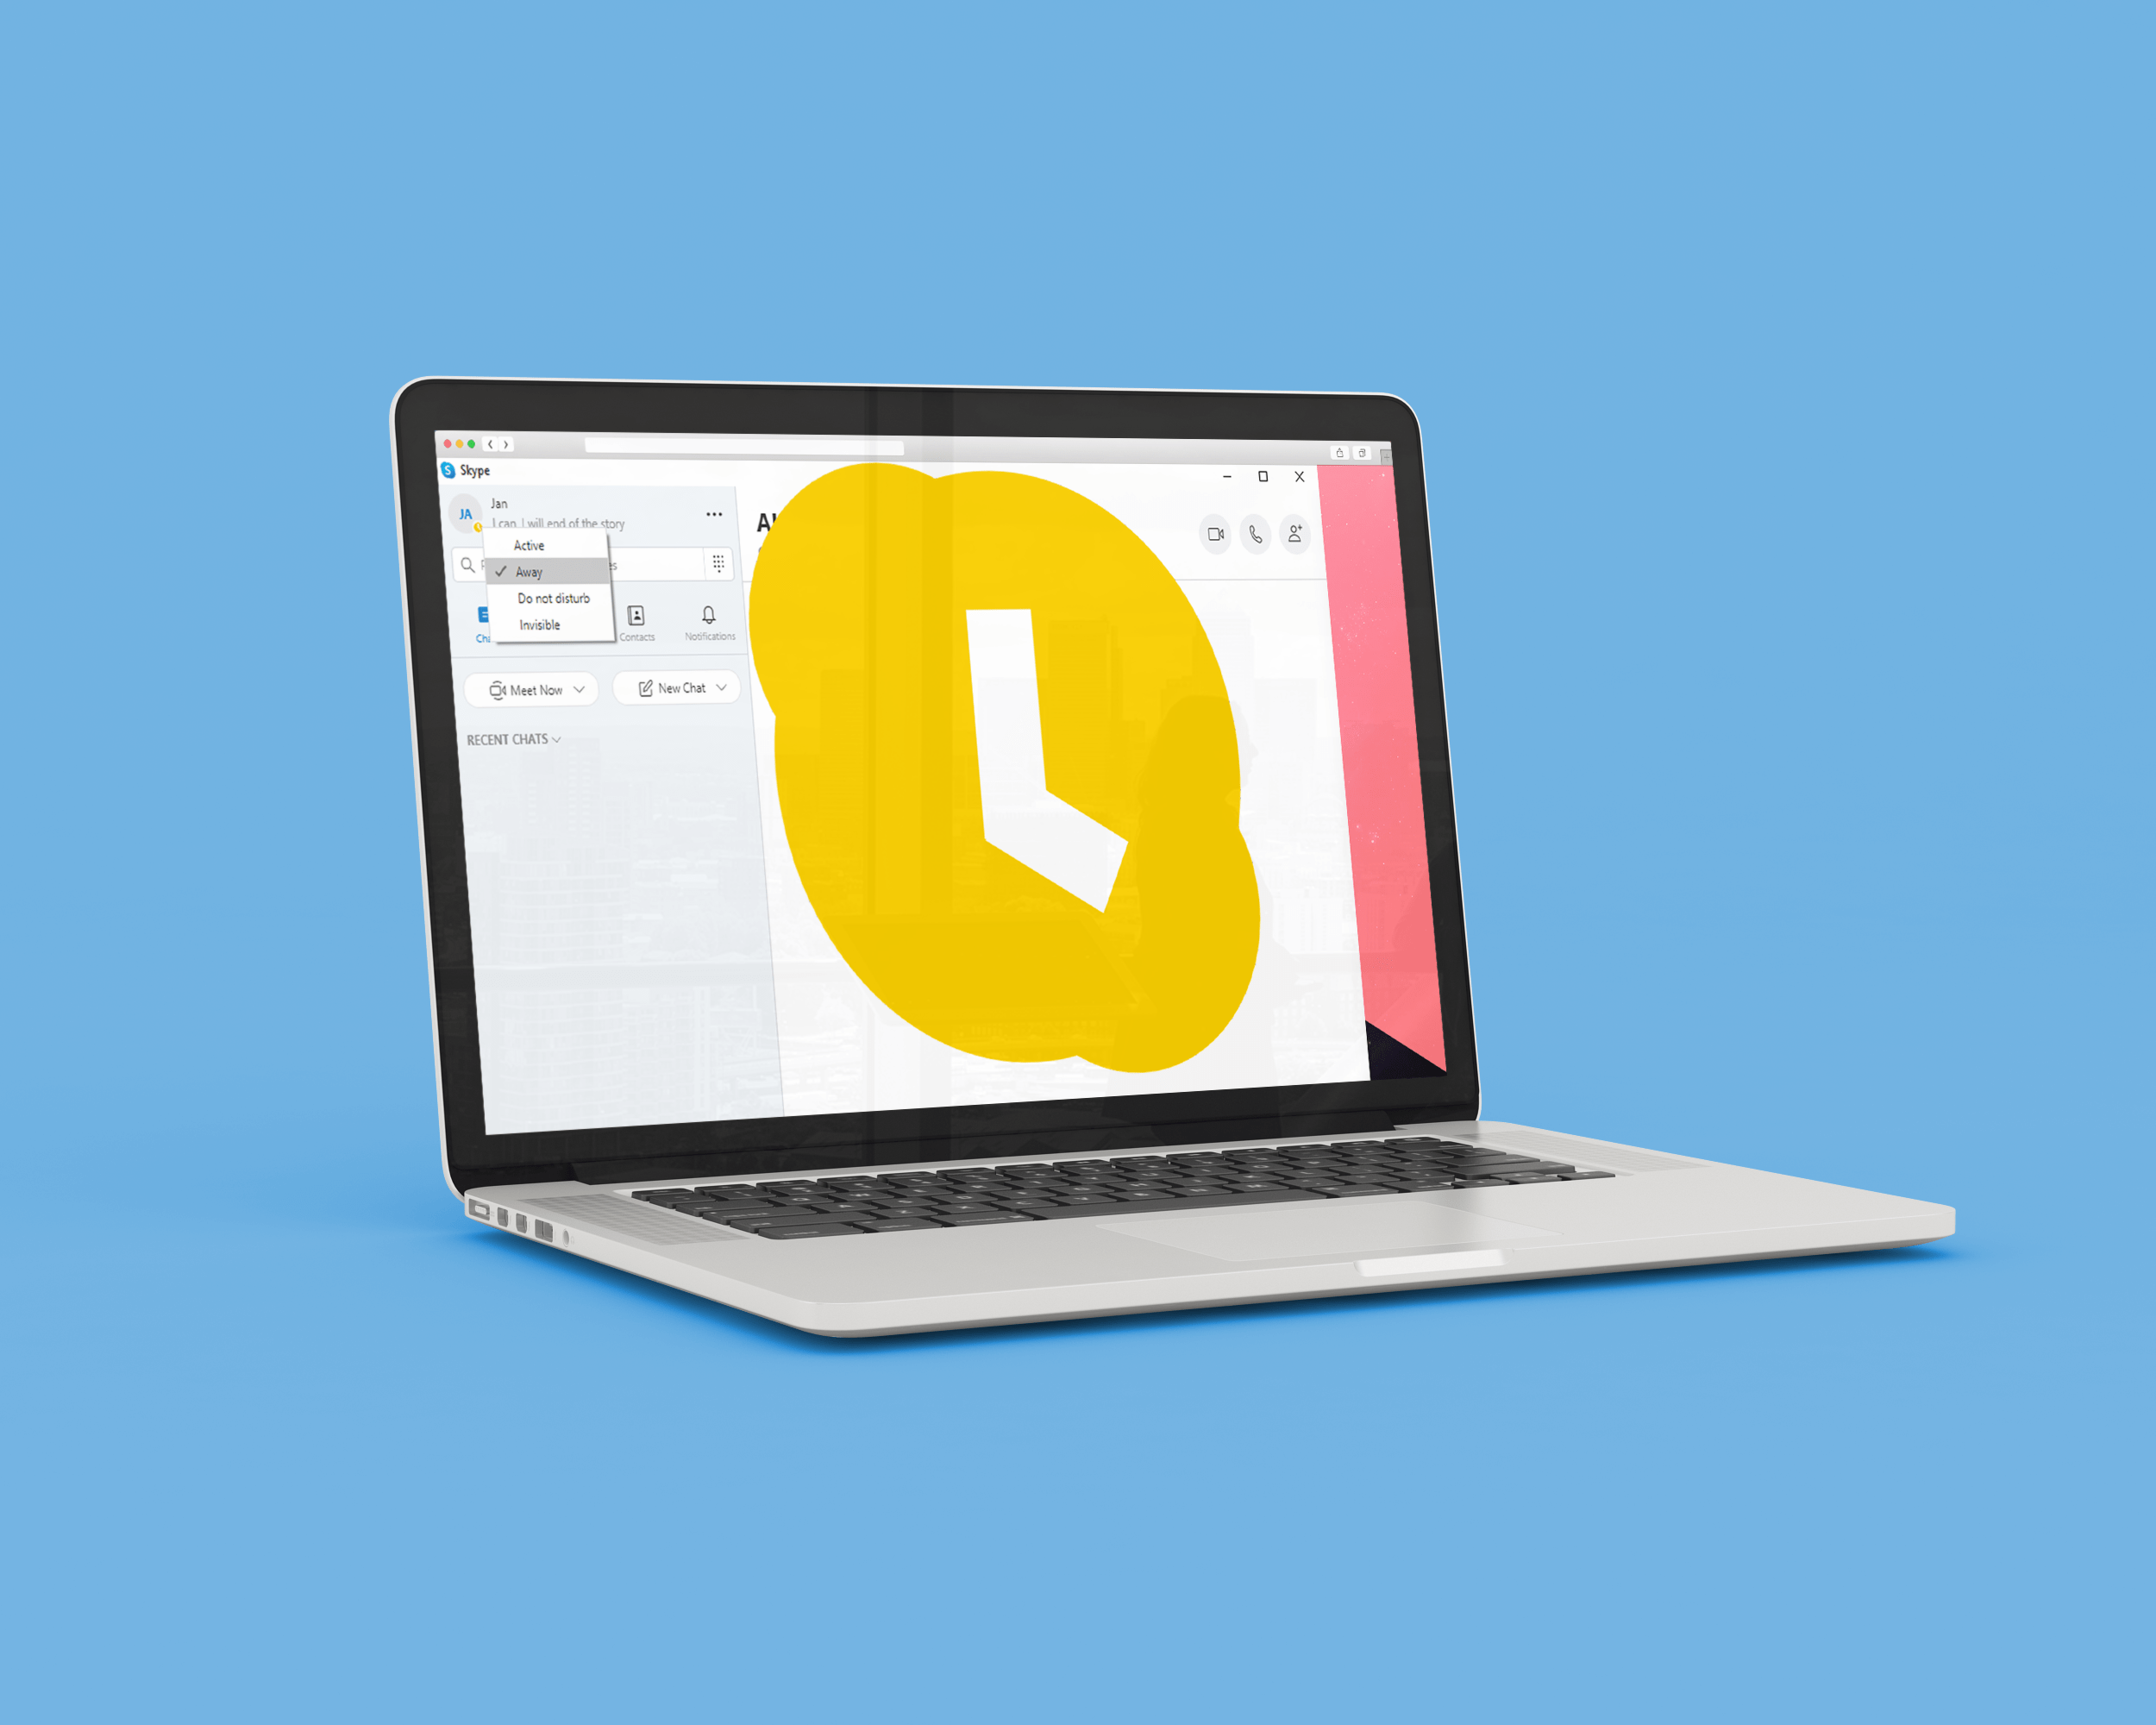 اسکائپ میں دور پیغام کیسے ترتیب دیا جائے۔